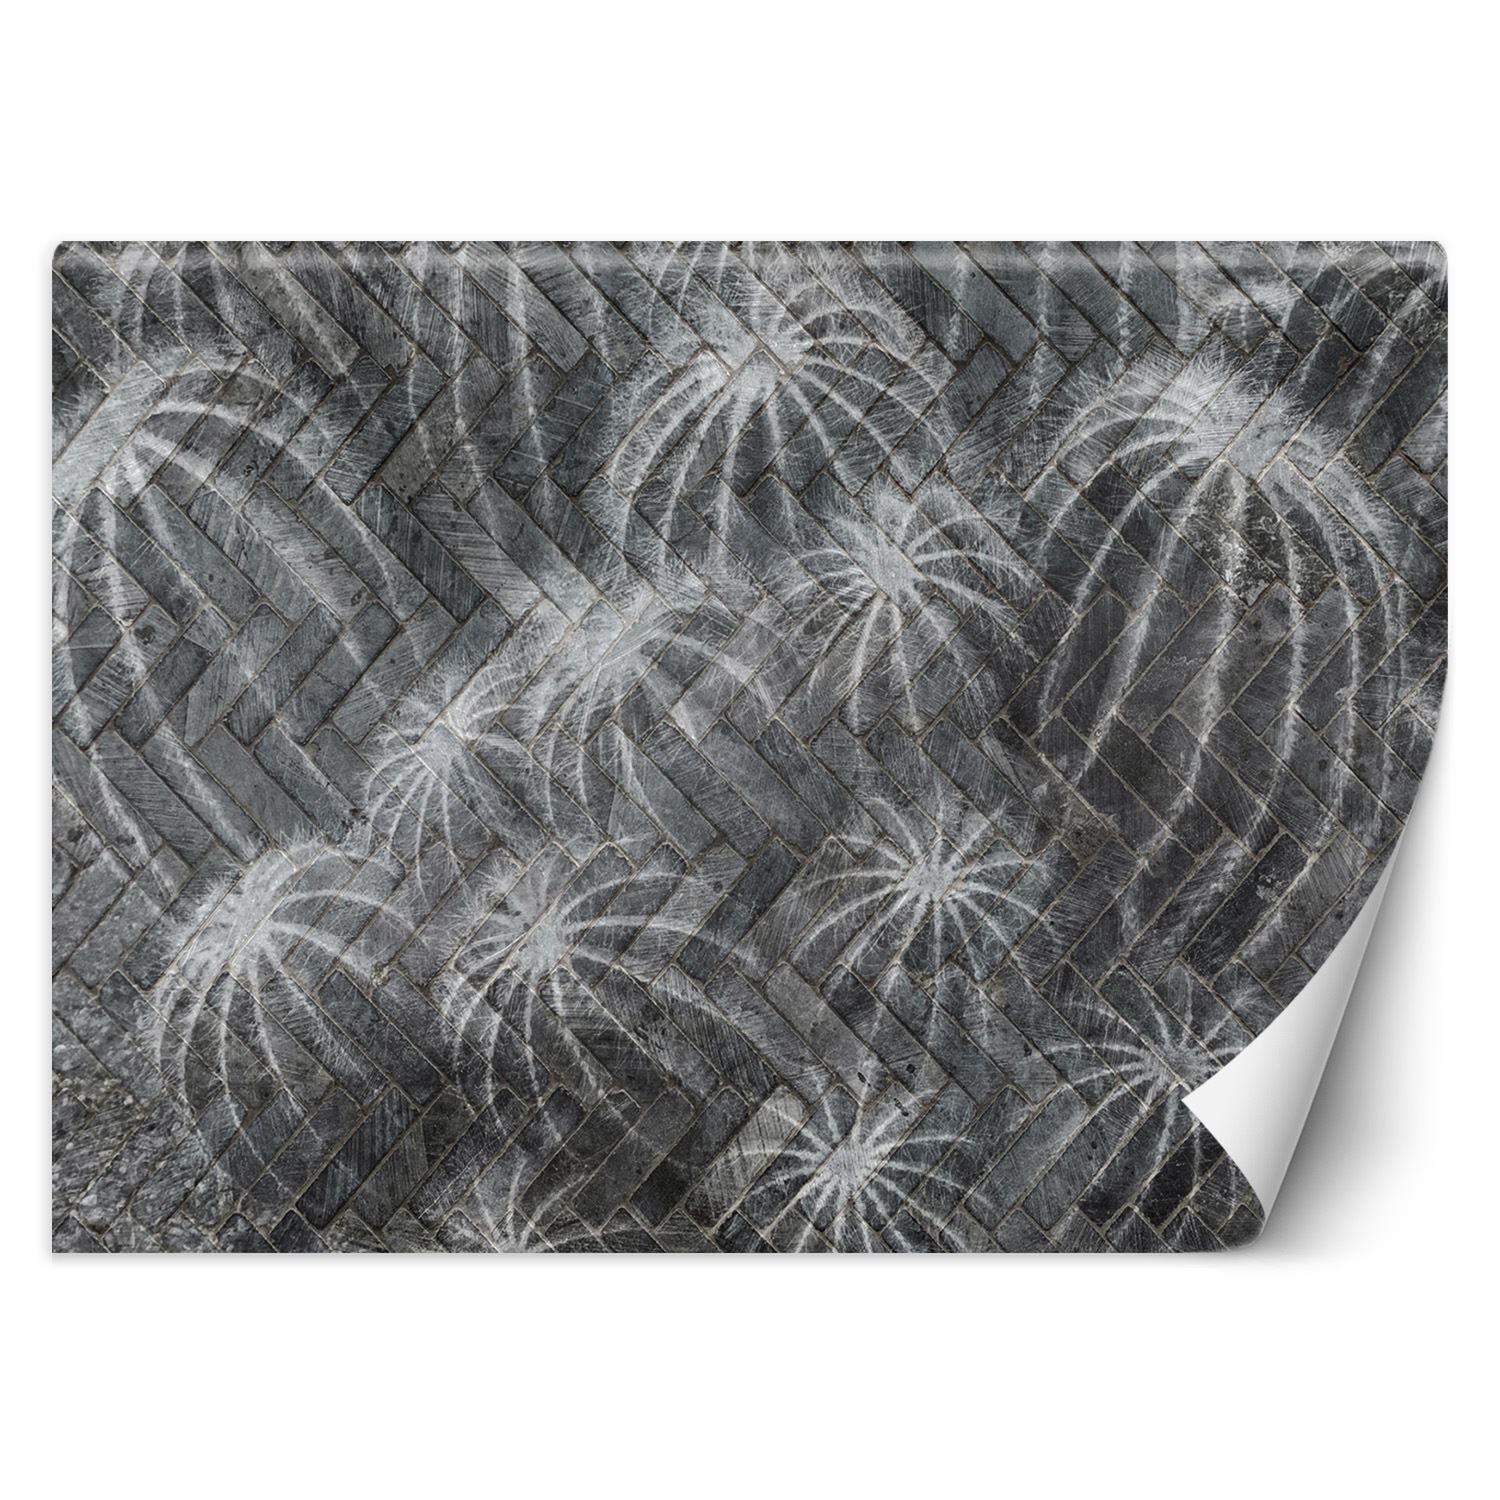 Trend24 – Behang – Cactussen In Grijs – Vliesbehang – Behang Woonkamer – Fotobehang – 350×245 cm – Incl. behanglijm